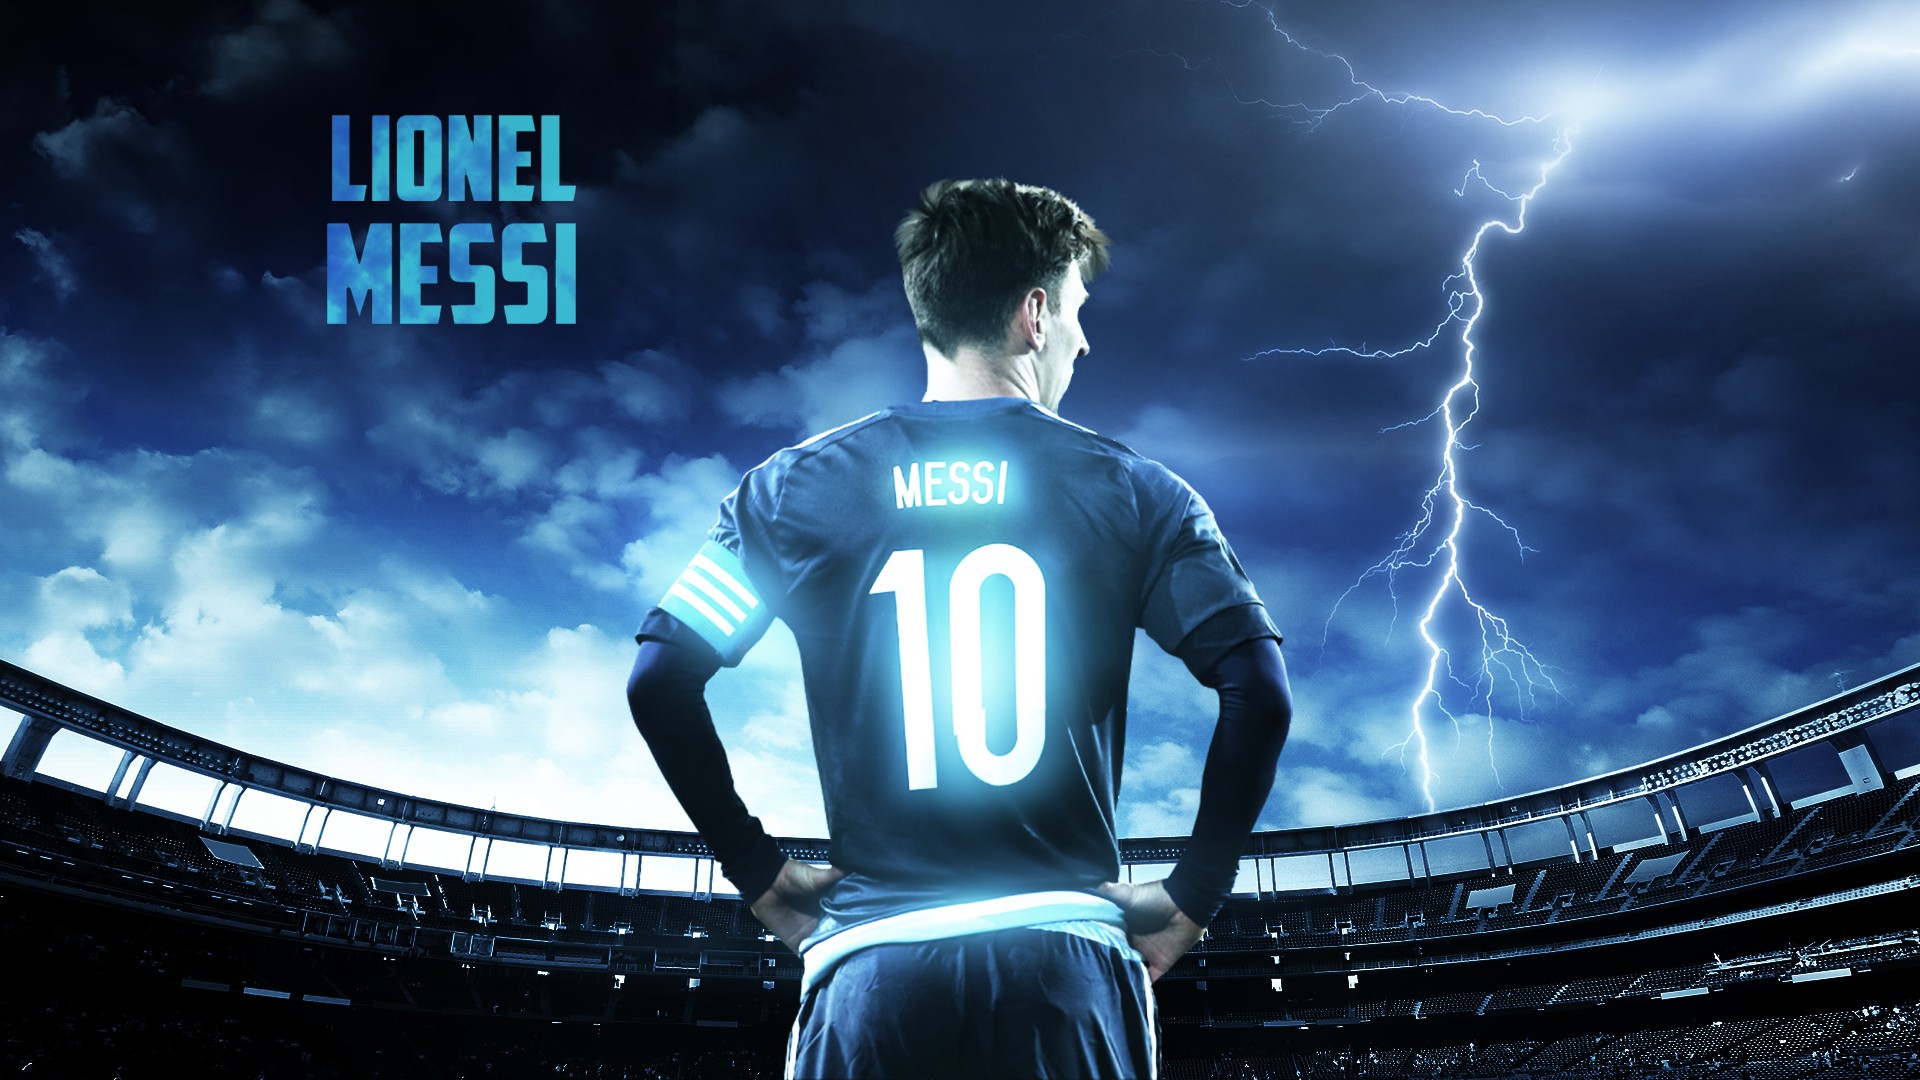 Đội bóng của bạn sẽ tin tưởng vào Messi như thế nào trong mùa giải World Cup? Xem hình ảnh này để cảm nhận sự hứng khởi của các fan hâm mộ trên toàn thế giới và cùng nhau chờ đón chiến thắng của đội tuyển.